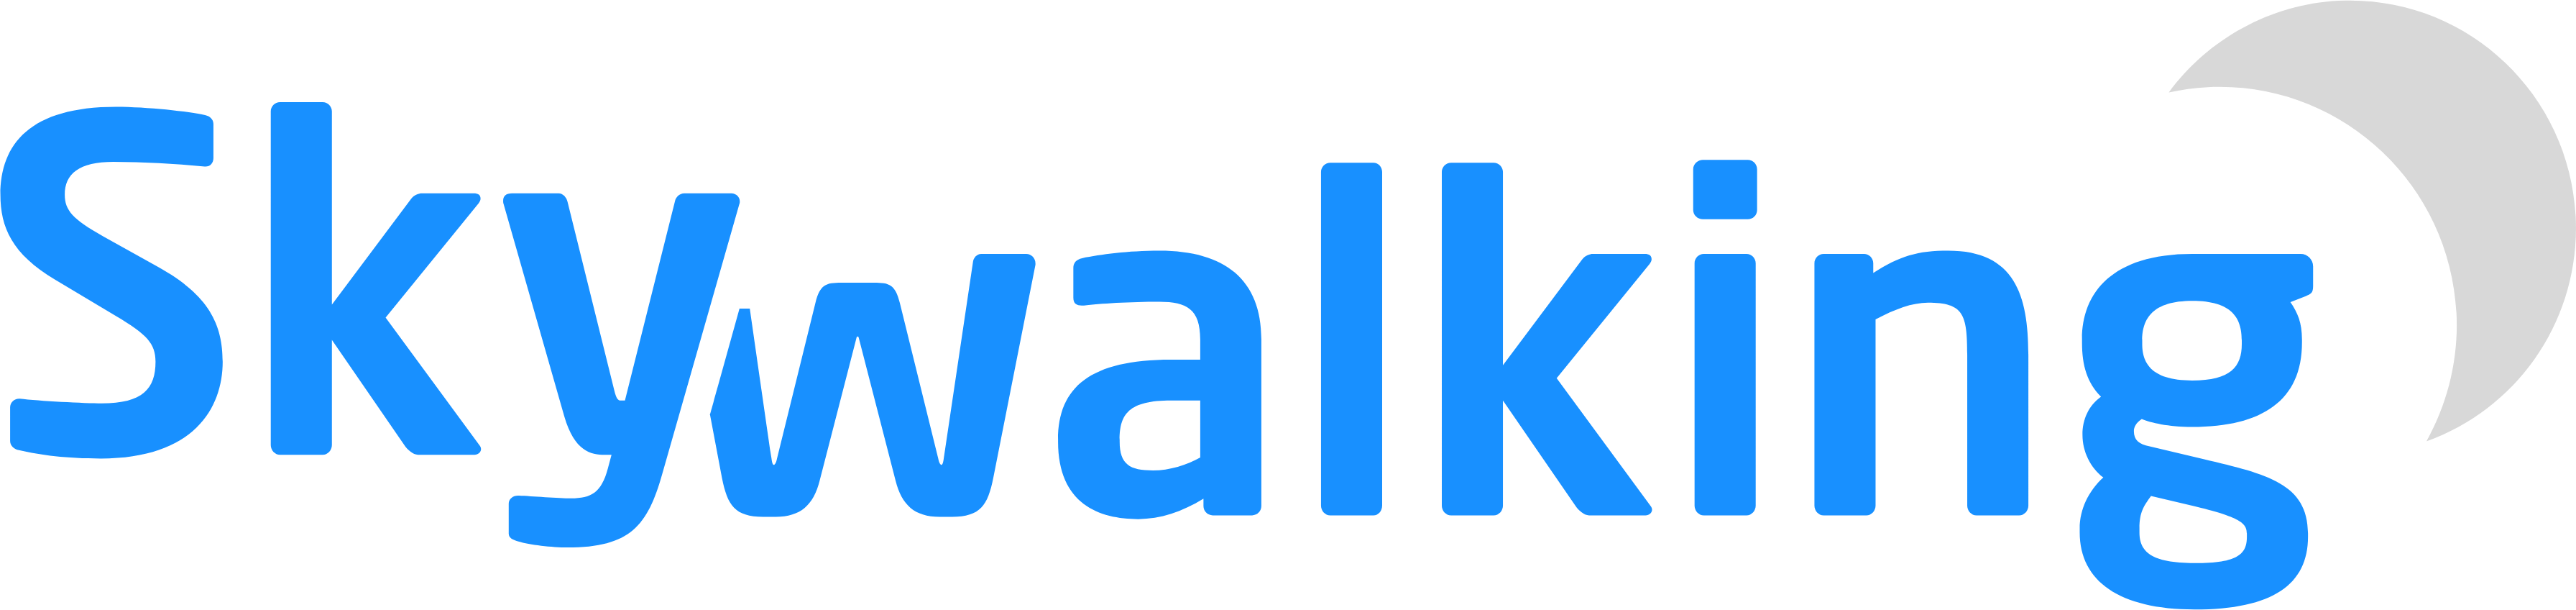 Skywalking .NET Core